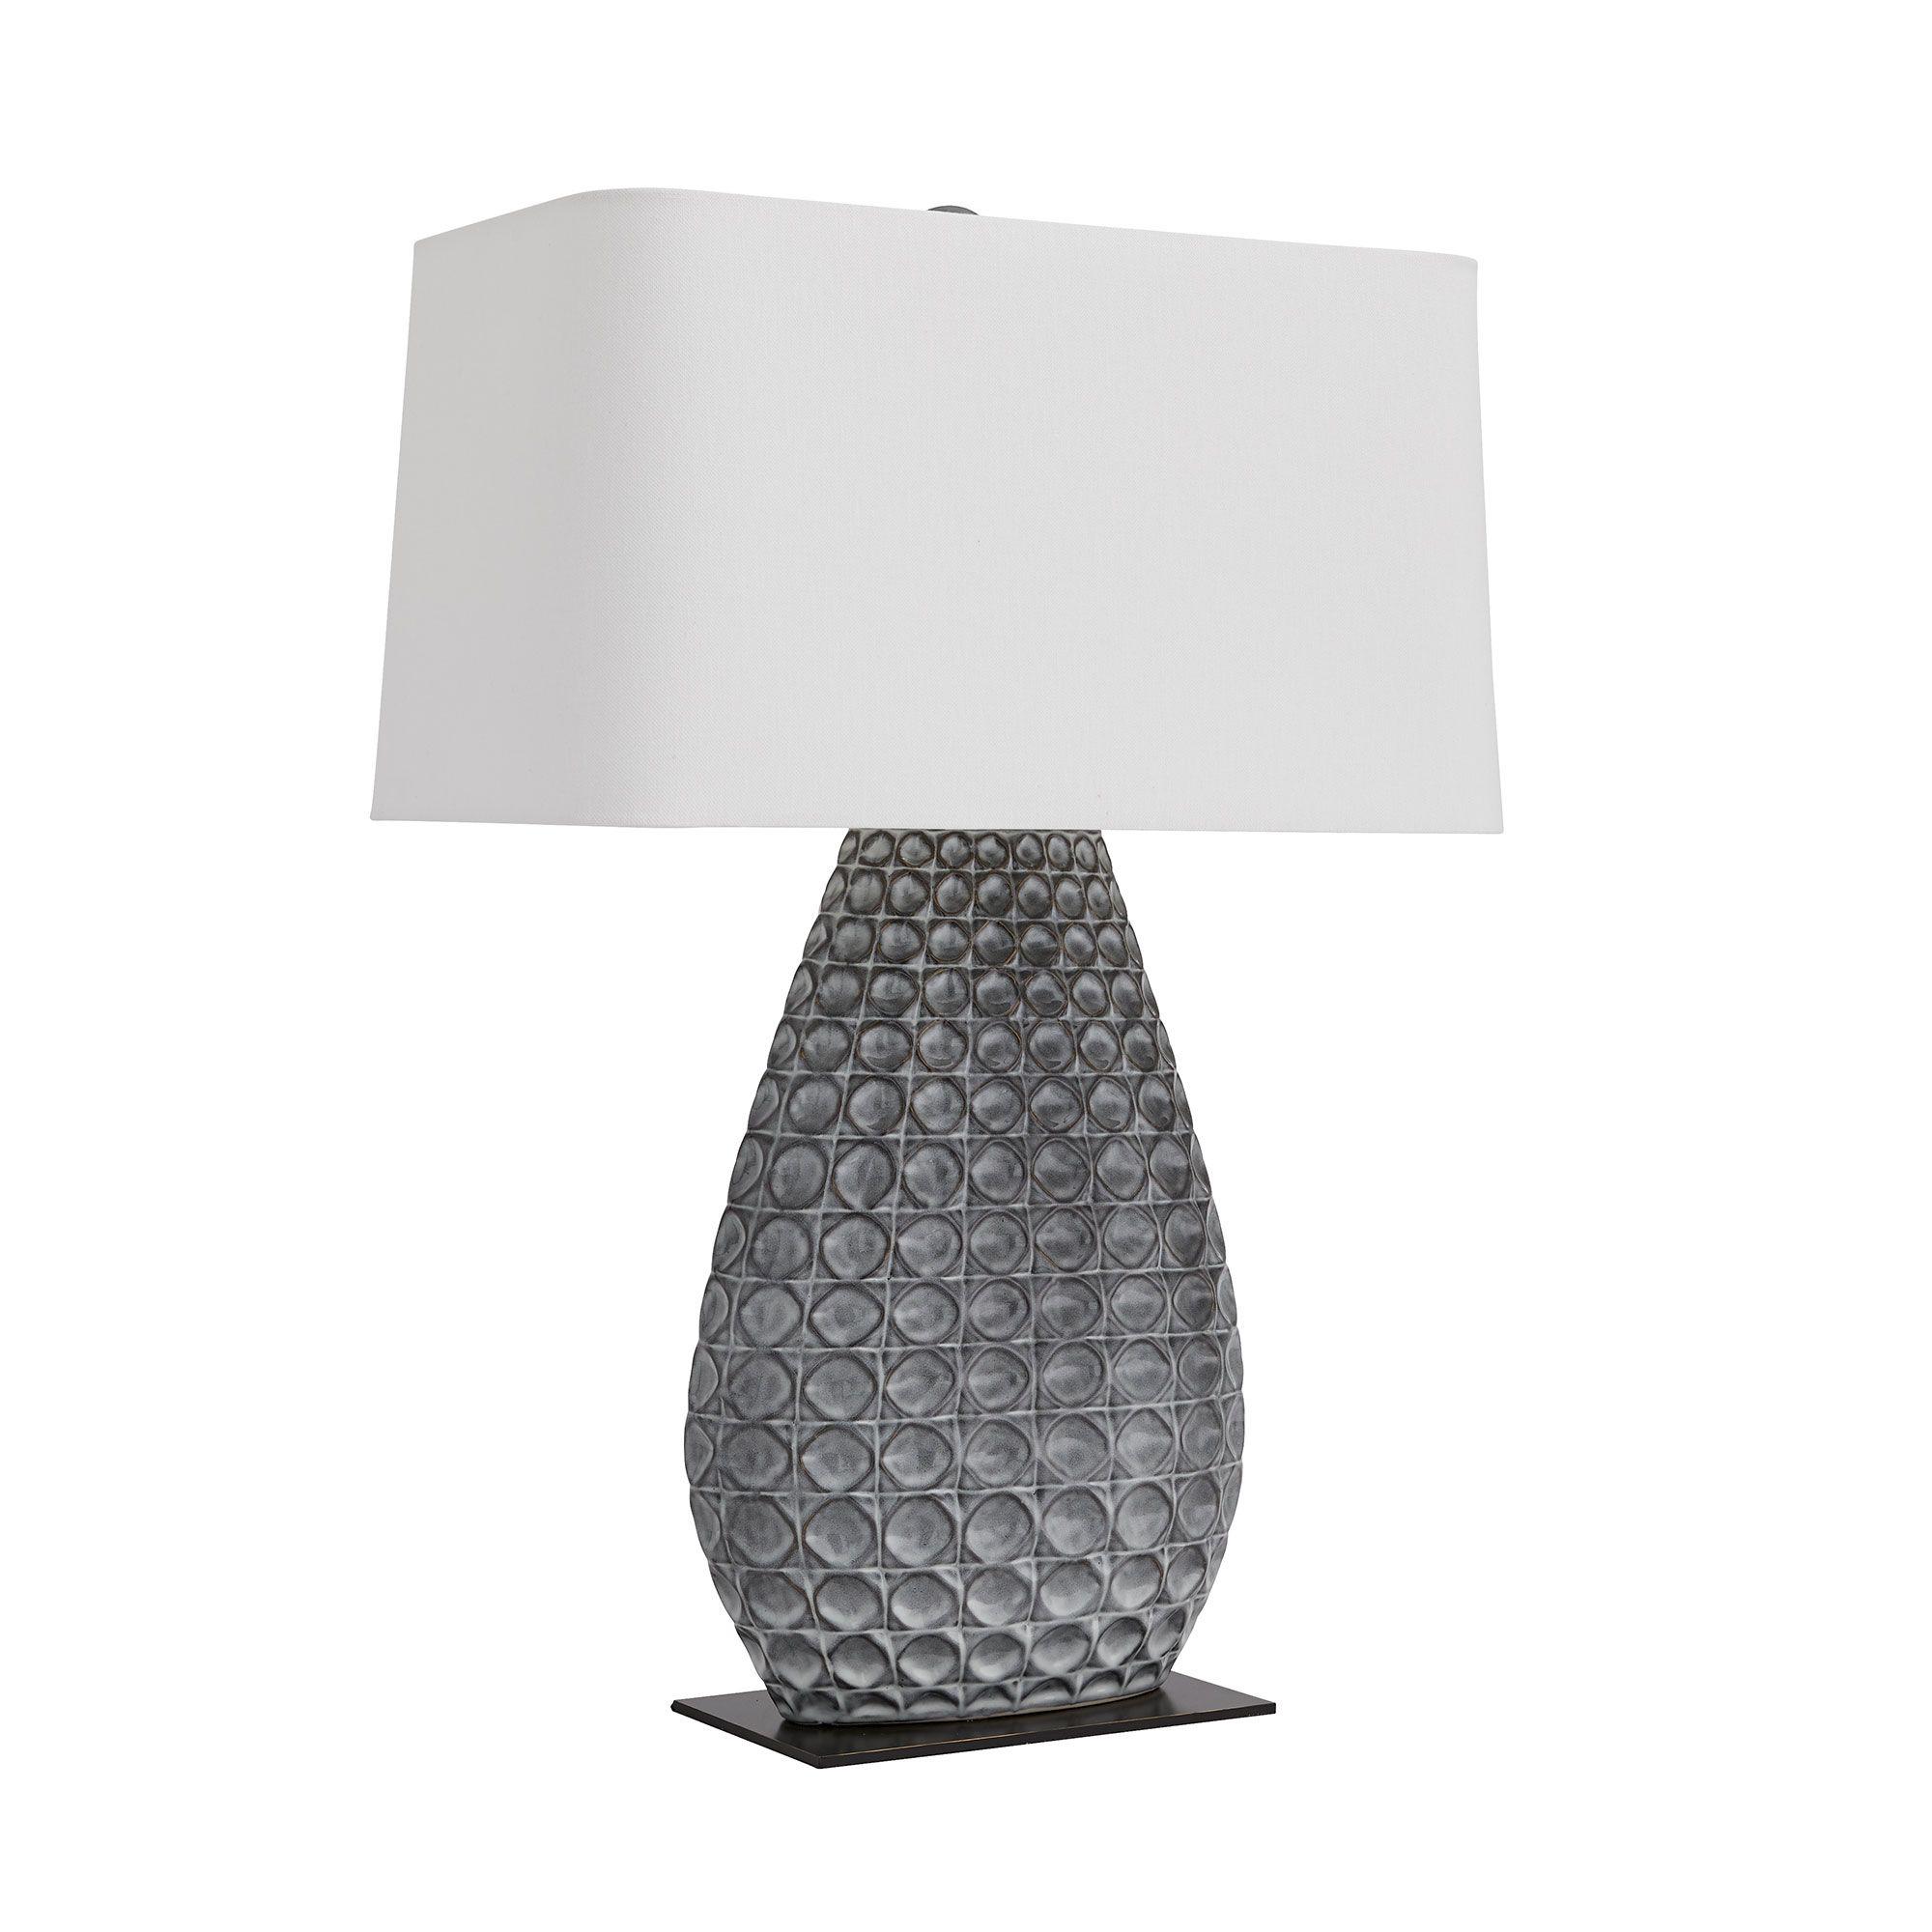 Купить Настольная лампа Ismere Lamp в интернет-магазине roooms.ru